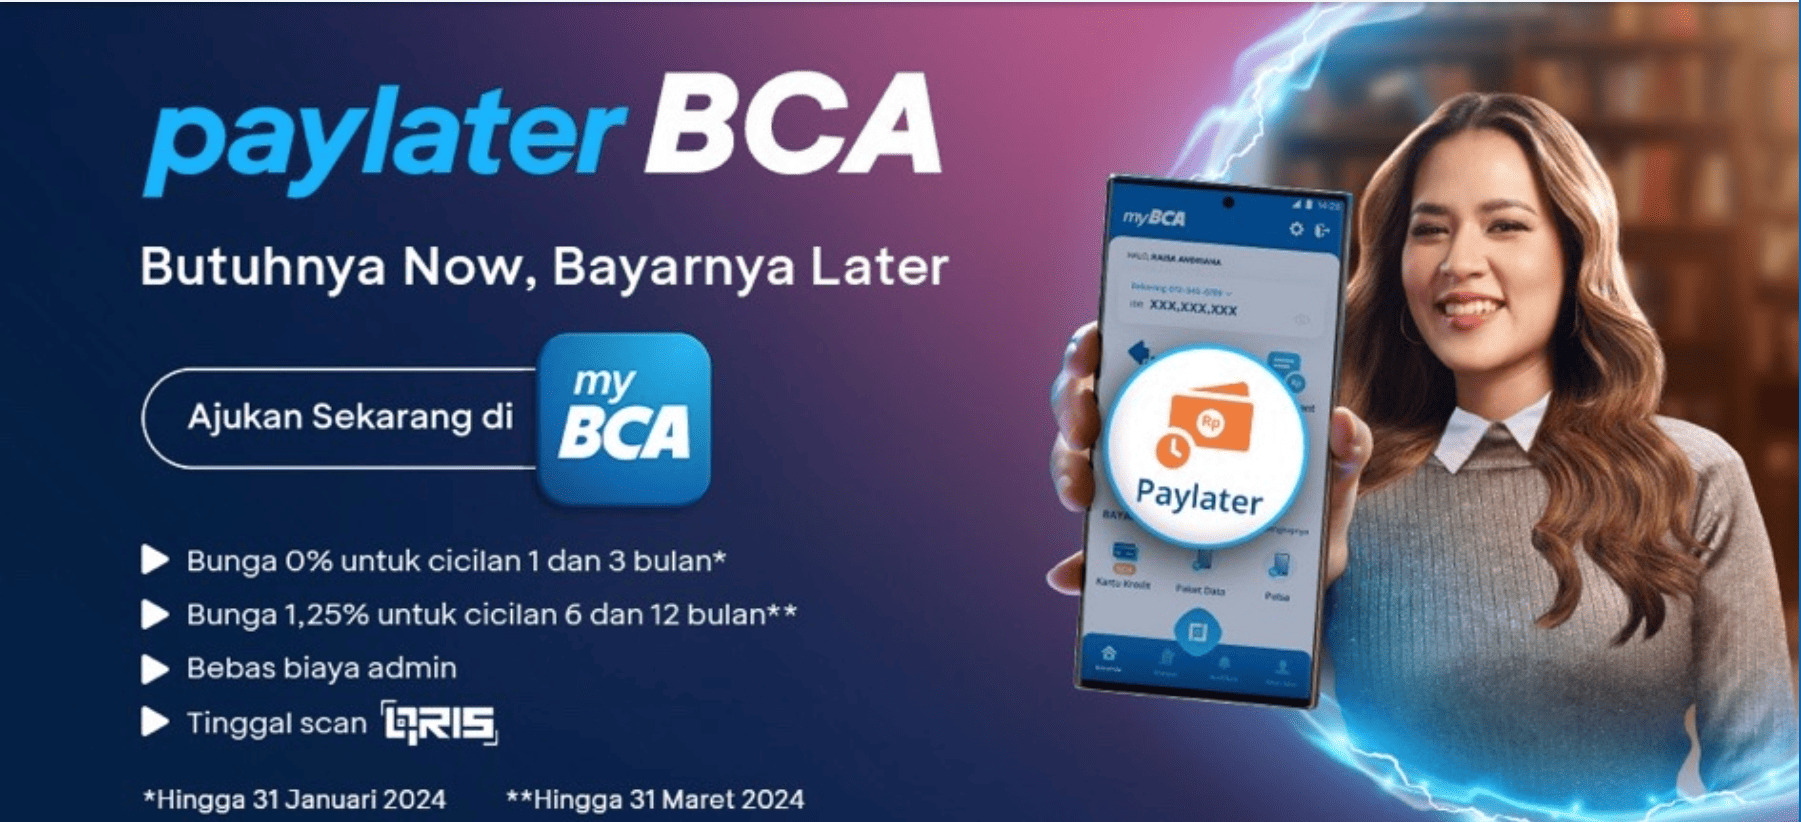 BCA - Introducing BCA Paylater in myBCA, Simplify Financial Management ...